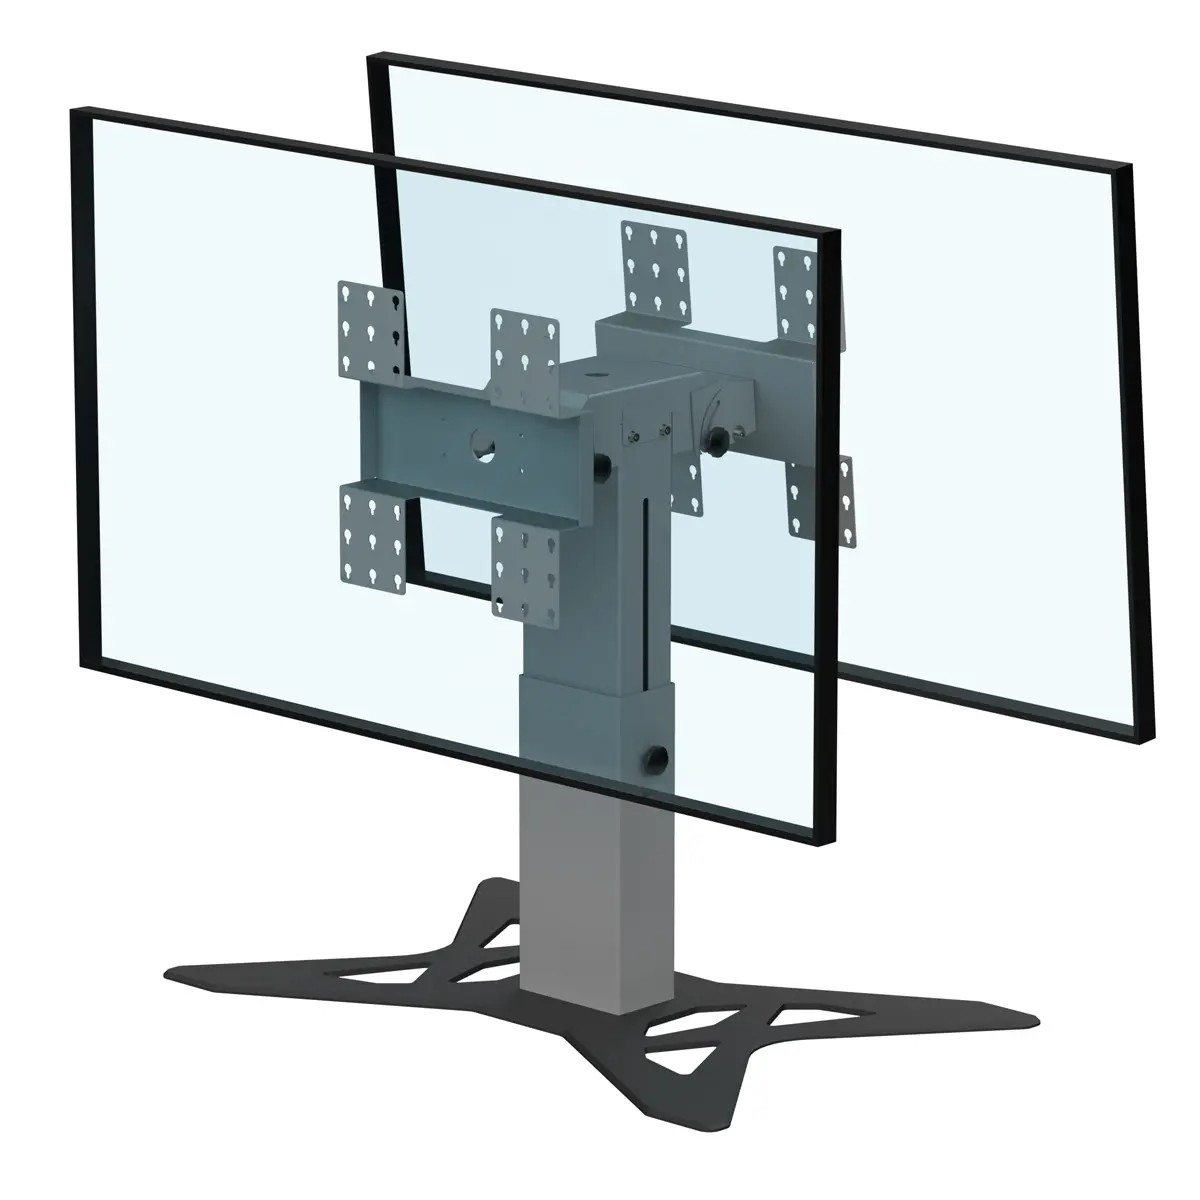 Support double écrans bas retour écran hauteur réglable 500-800mm réglable en hauteur avec embase type A